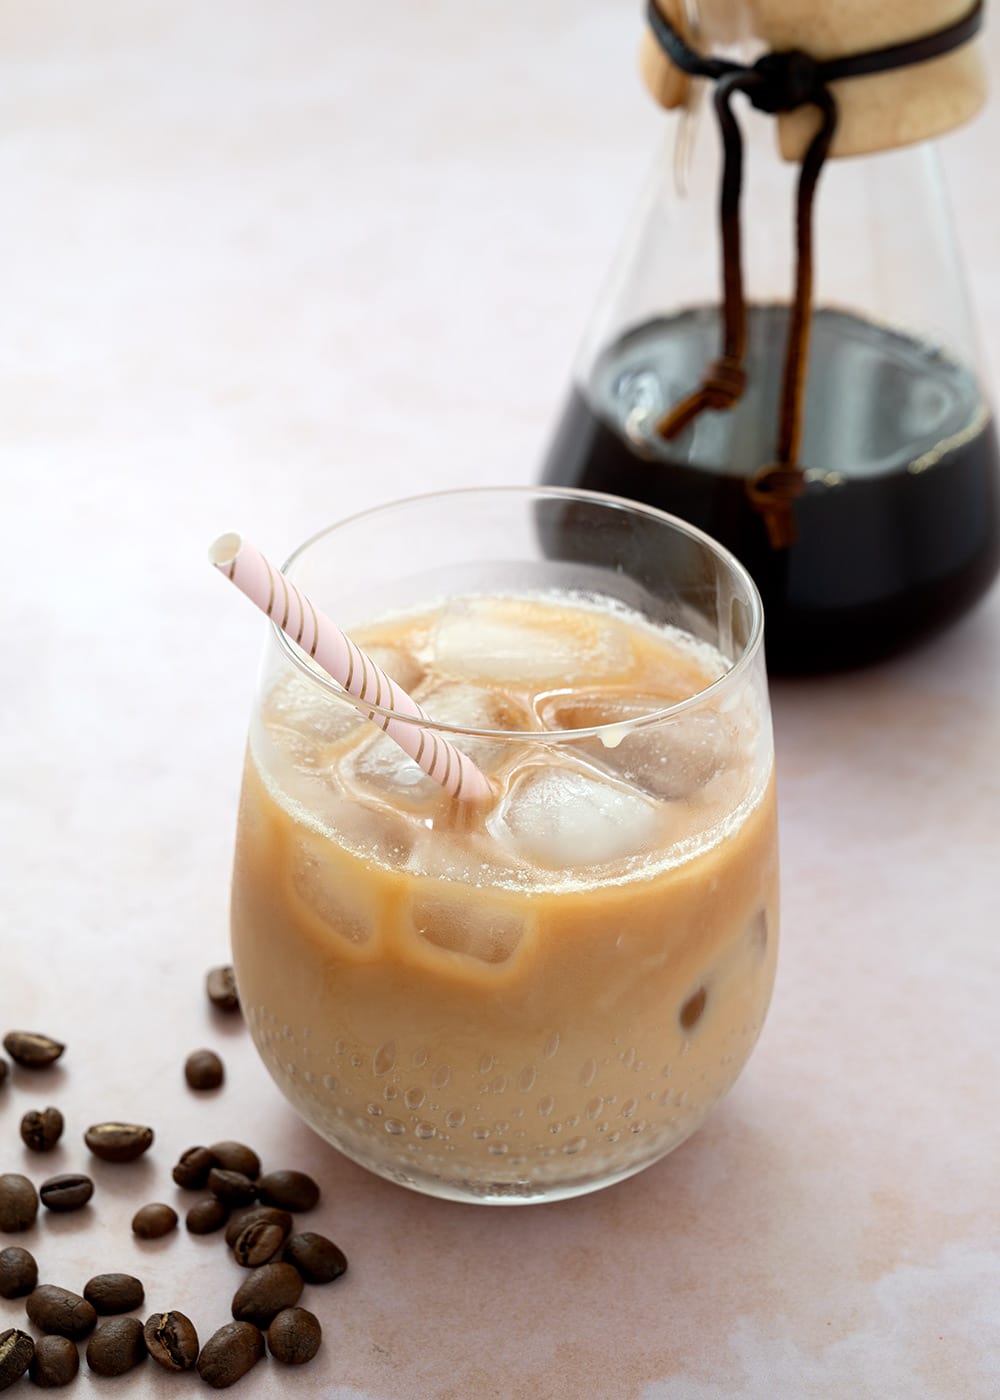 Iskaffe - god opskrift på hjemmelavet kaffe